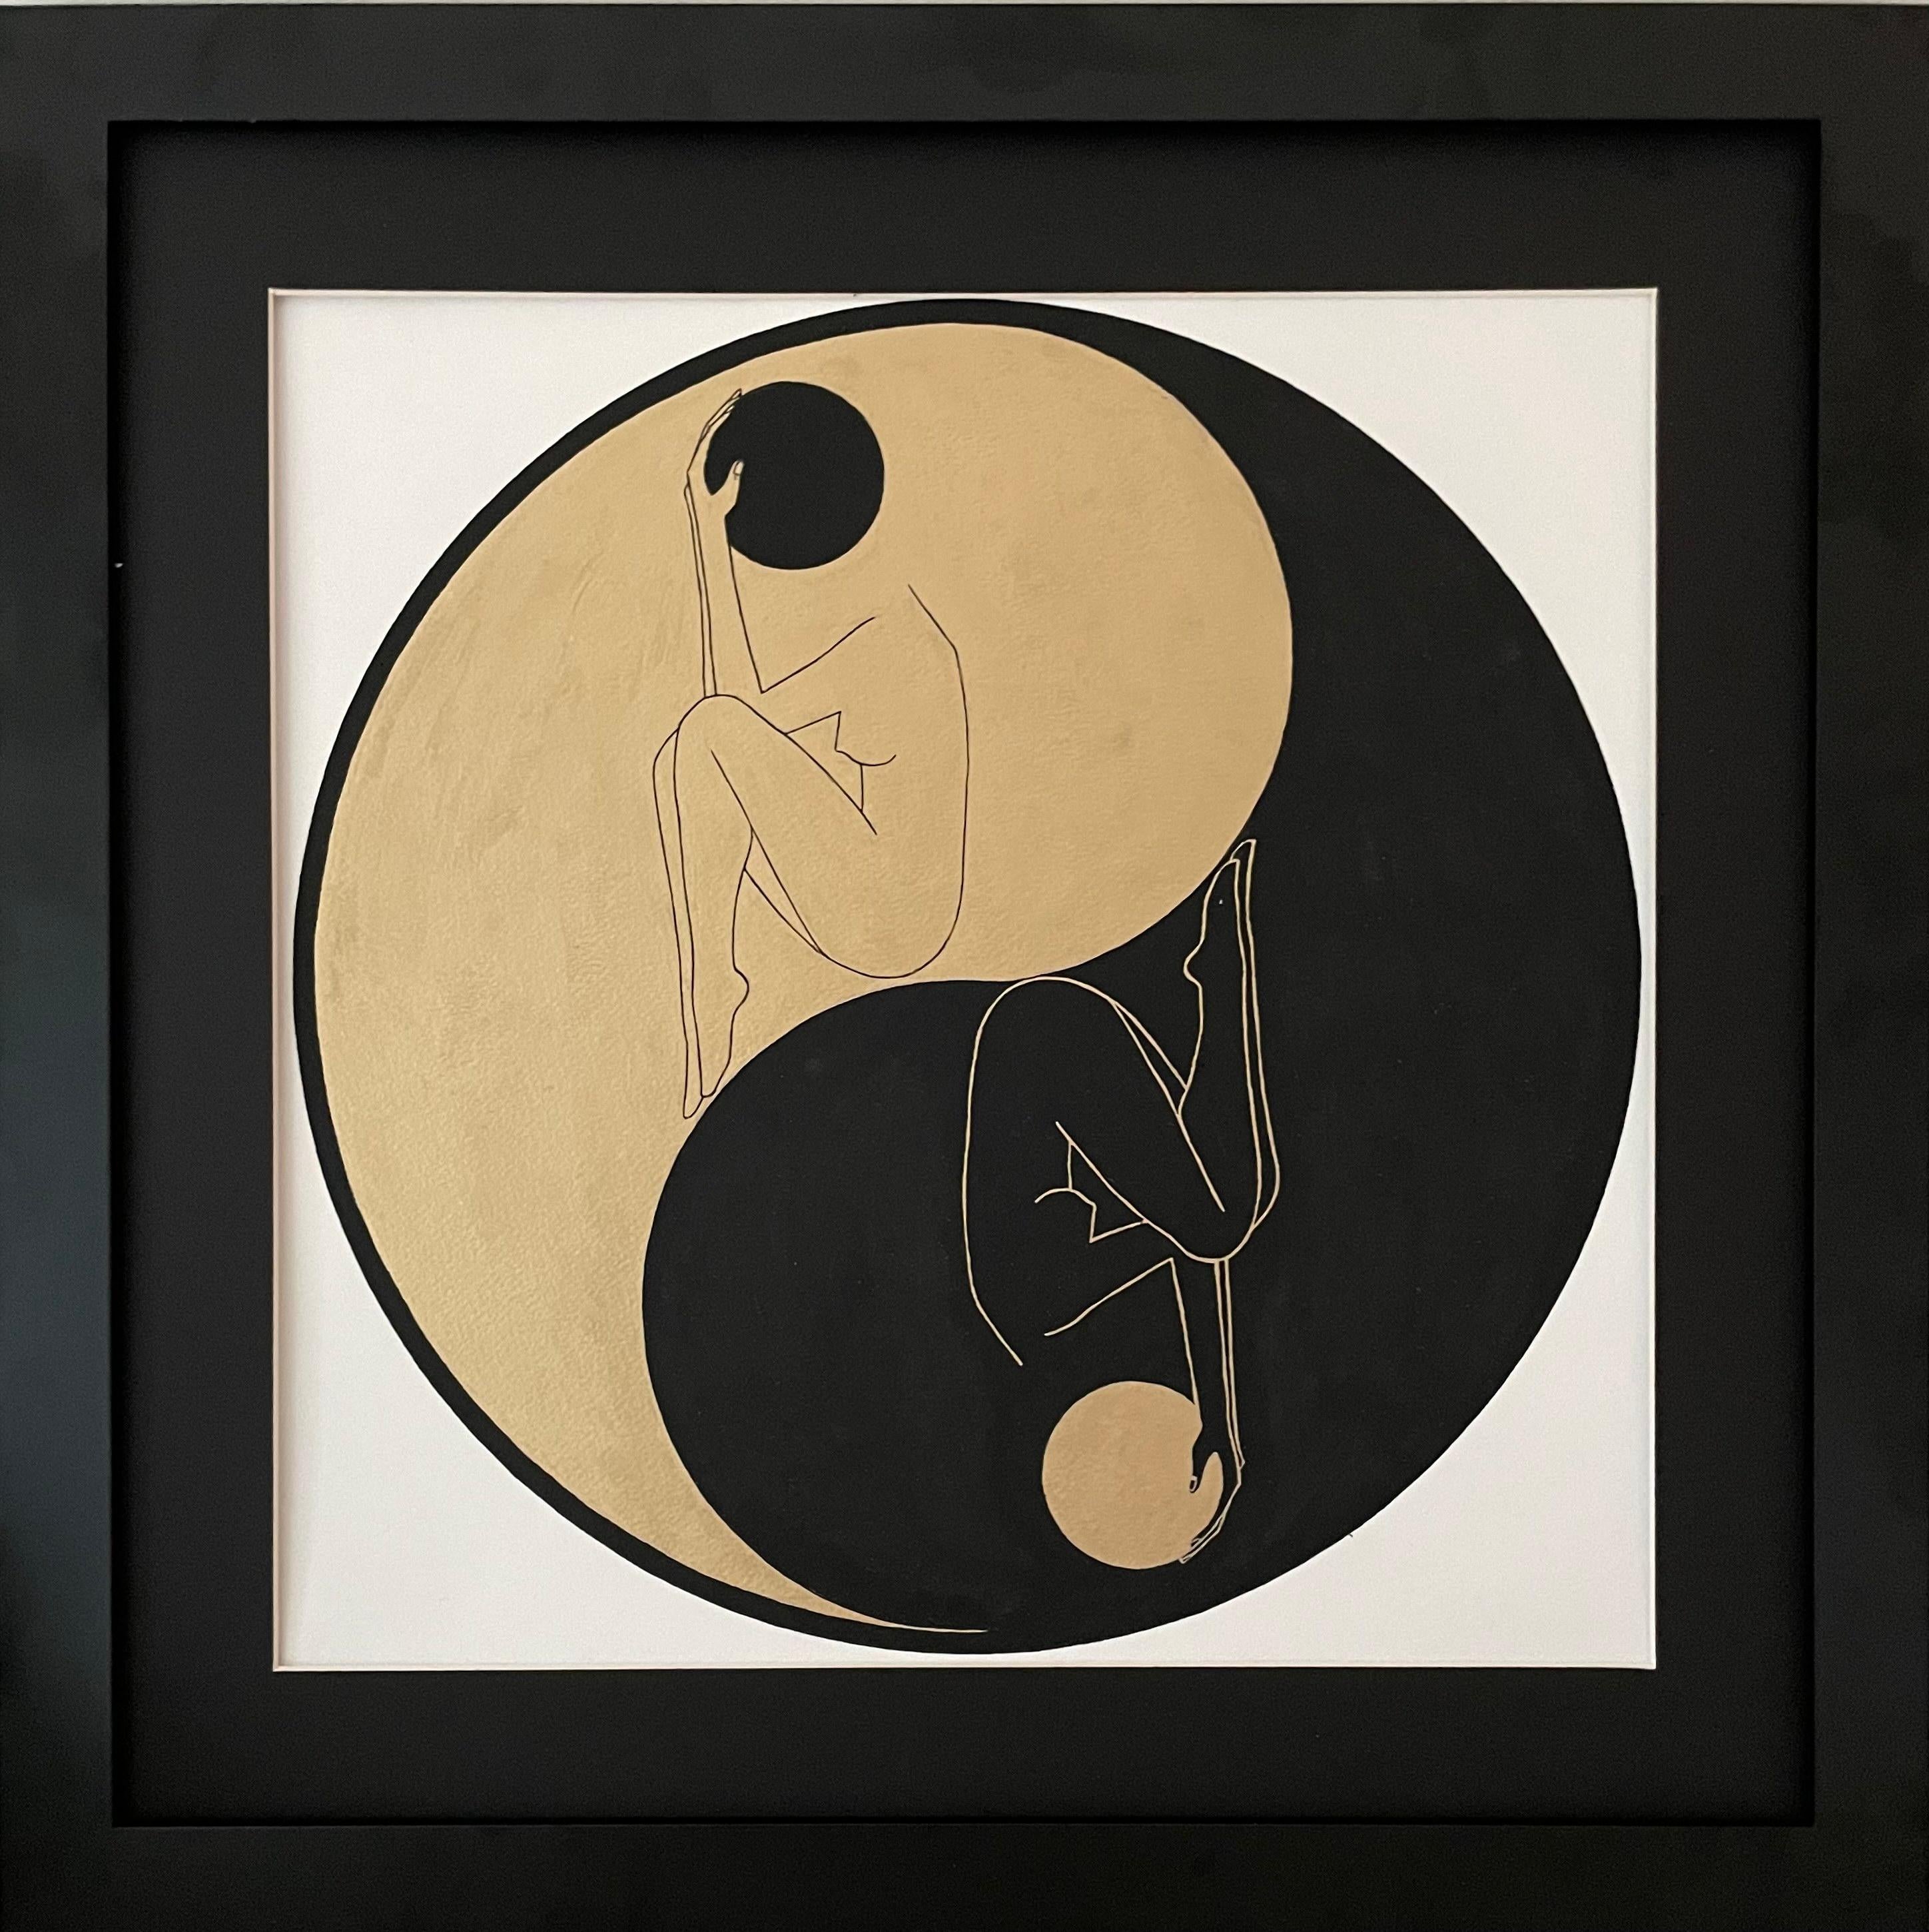 Mila Akopova Abstract Drawing – Yin und Yang - Linienzeichnungsfigur in einem Kreis mit goldener und schwarzer Scheibe